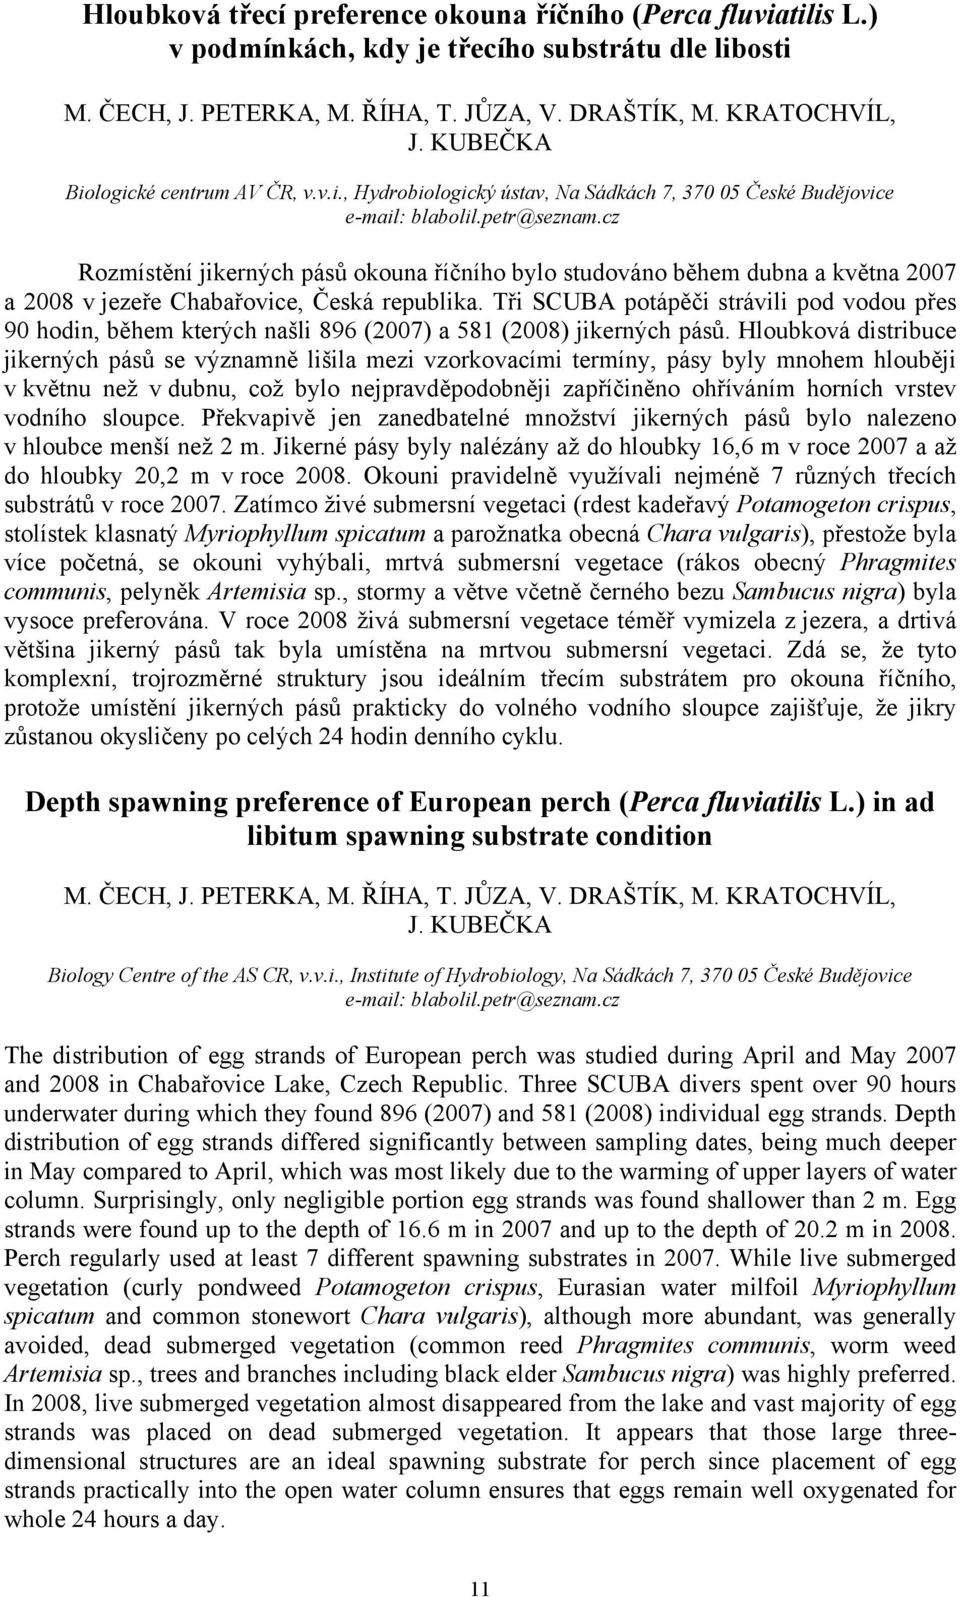 cz Rozmístění jikerných pásů okouna říčního bylo studováno během dubna a května 2007 a 2008 v jezeře Chabařovice, Česká republika.